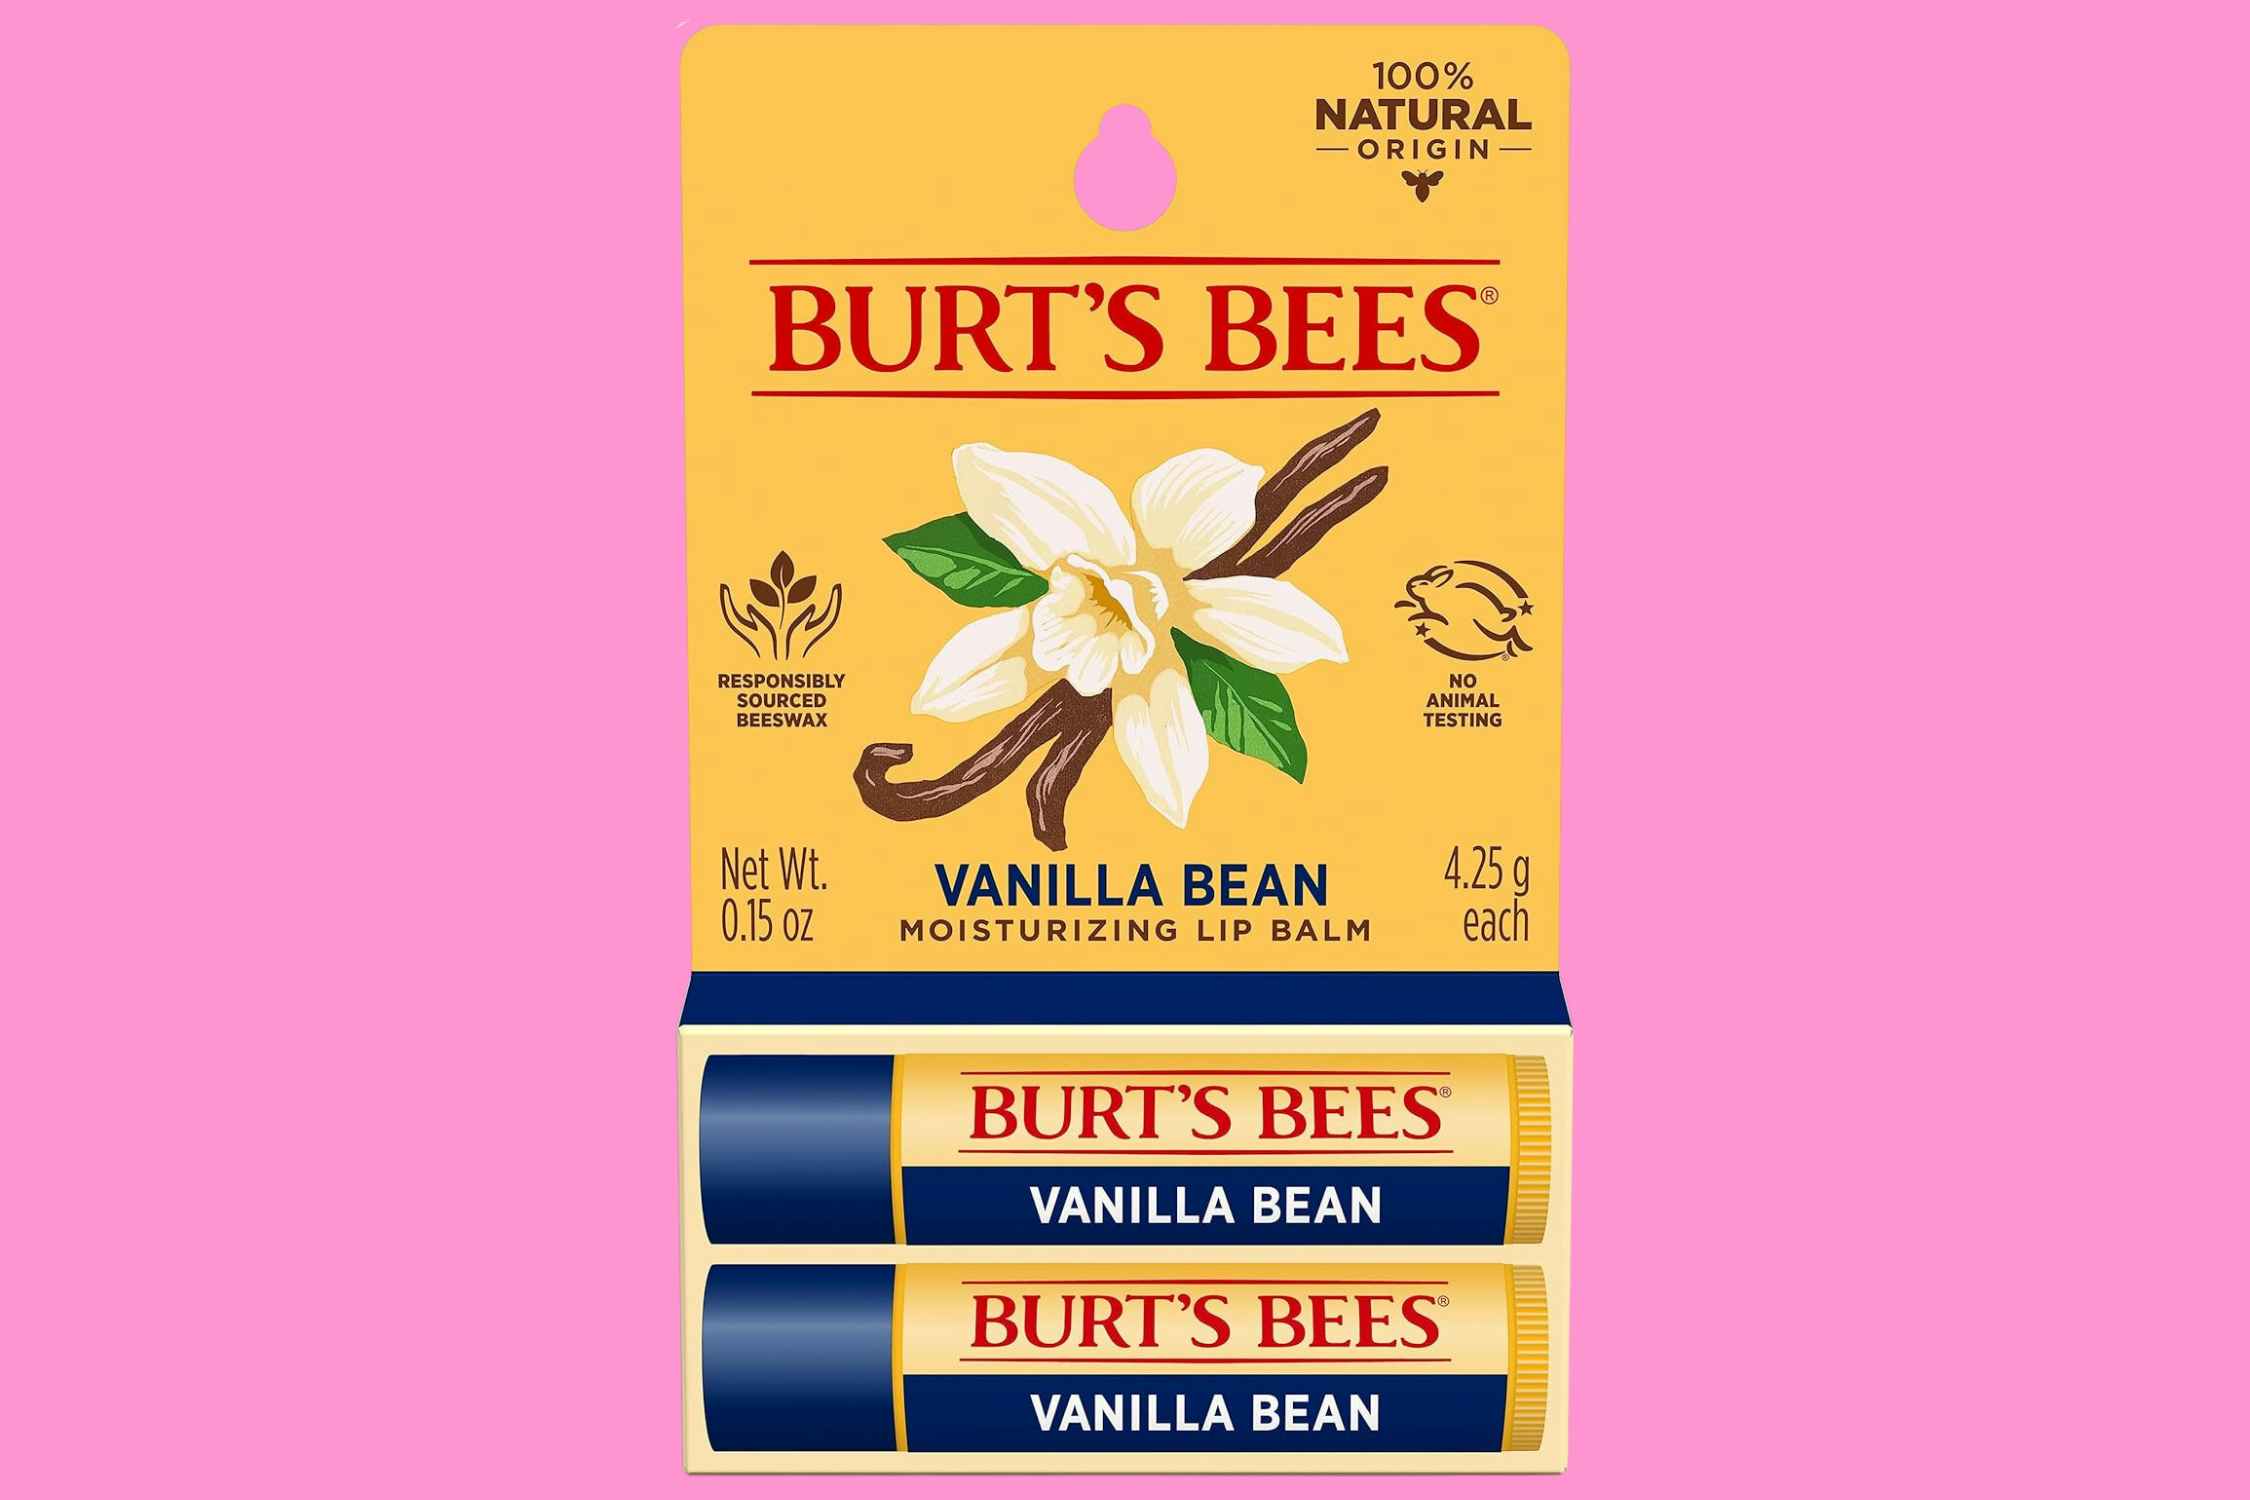 Burt's Bees Vanilla Bean Lip Balm 2-Pack, Now $3.30 on Amazon